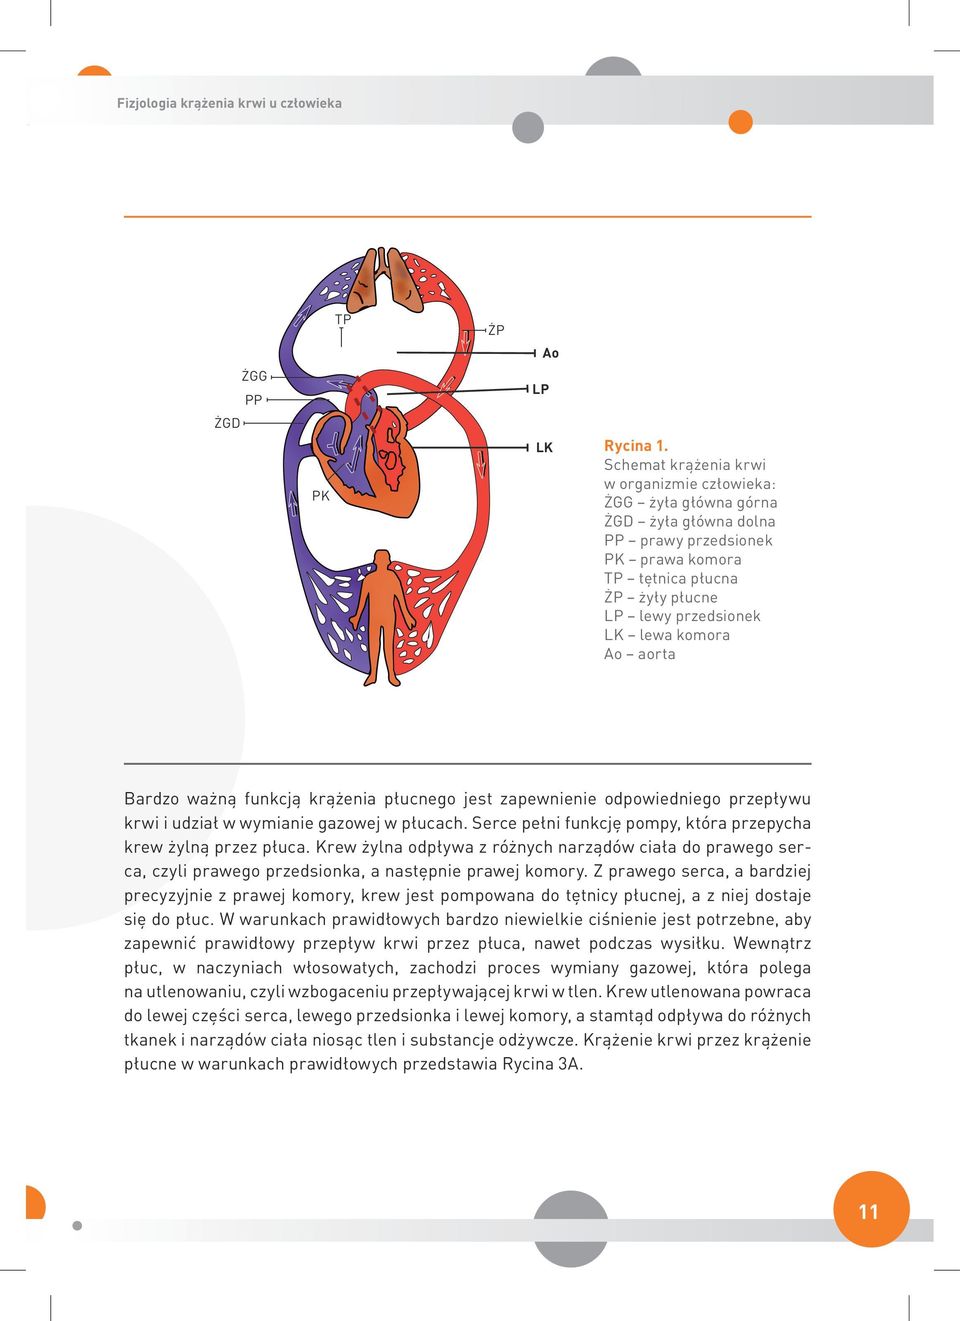 aorta Bardzo ważną funkcją krążenia płucnego jest zapewnienie odpowiedniego przepływu krwi i udział w wymianie gazowej w płucach. Serce pełni funkcję pompy, która przepycha krew żylną przez płuca.